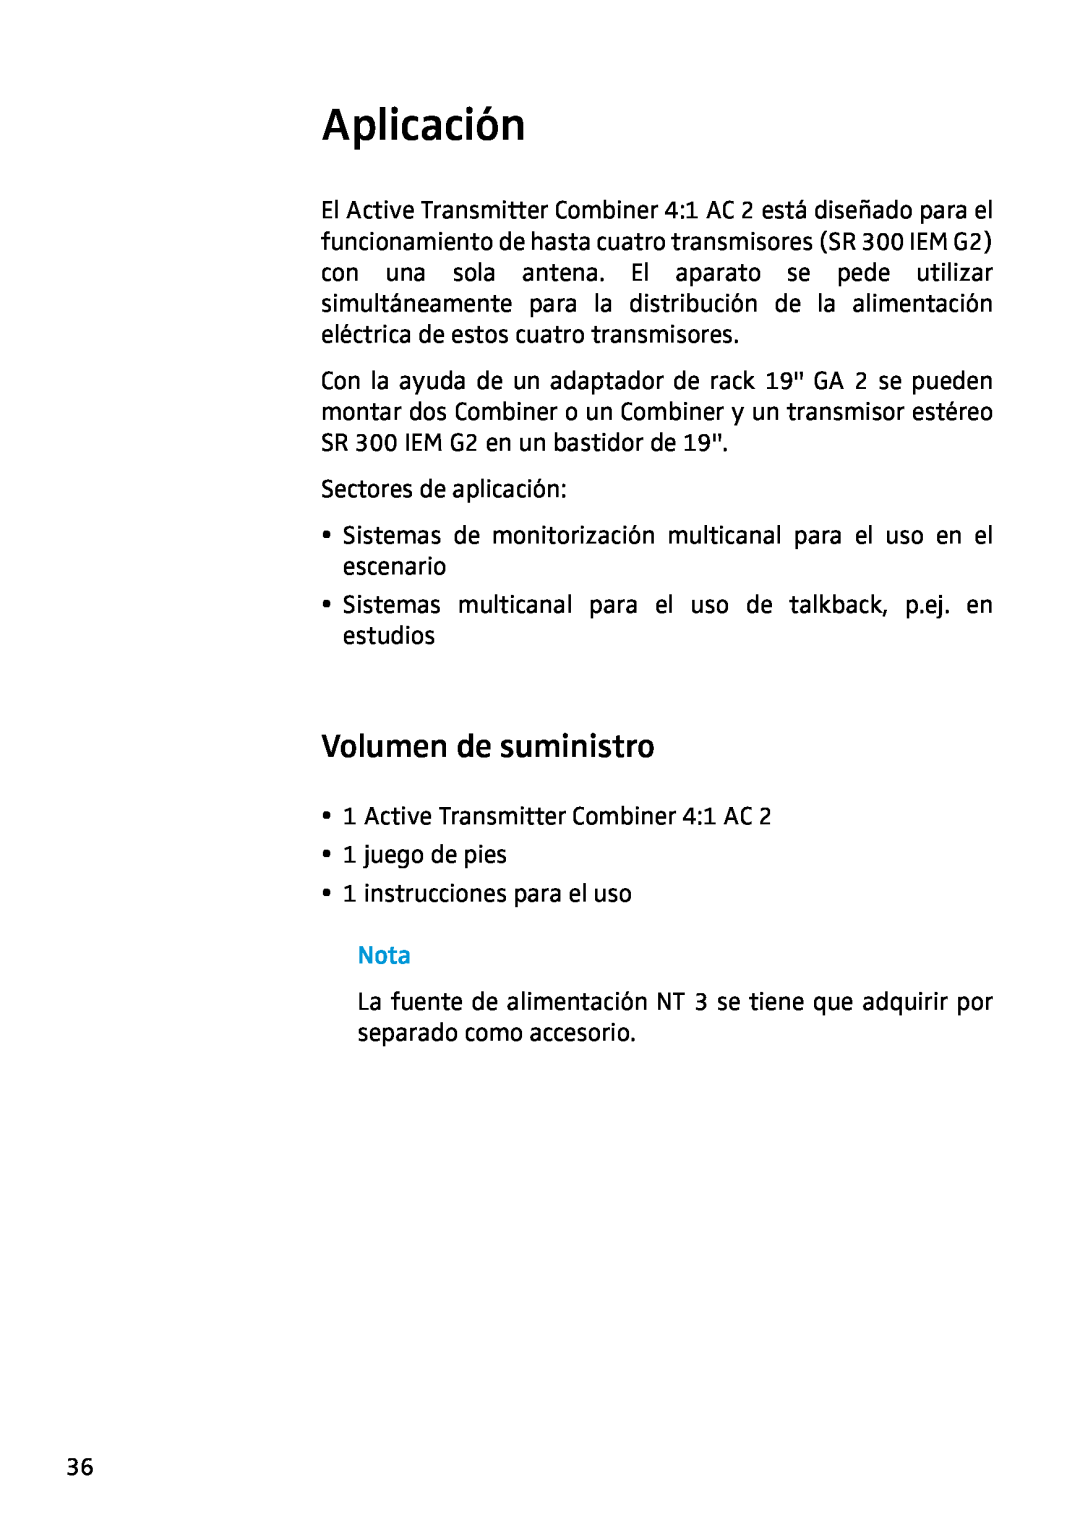 Sennheiser AC2 manual Aplicación, Volumen de suministro, Nota 